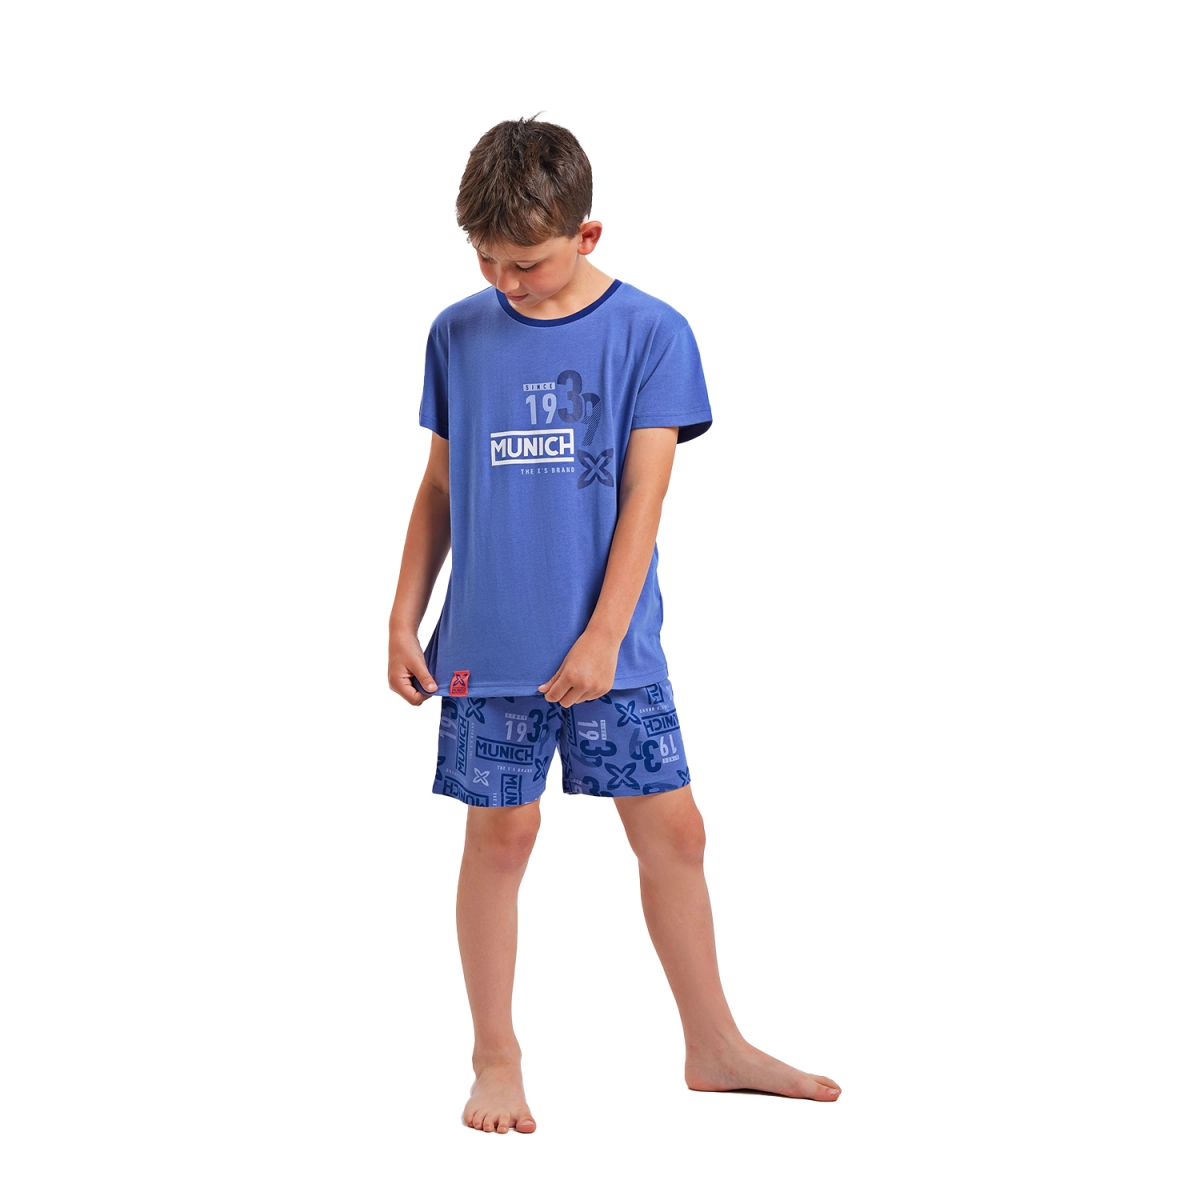 Pijama de manga corta y cuello redondo Munich DH1351 niño Talla: 6 AÑOS Color: Azul DH1351.6 AÑOS